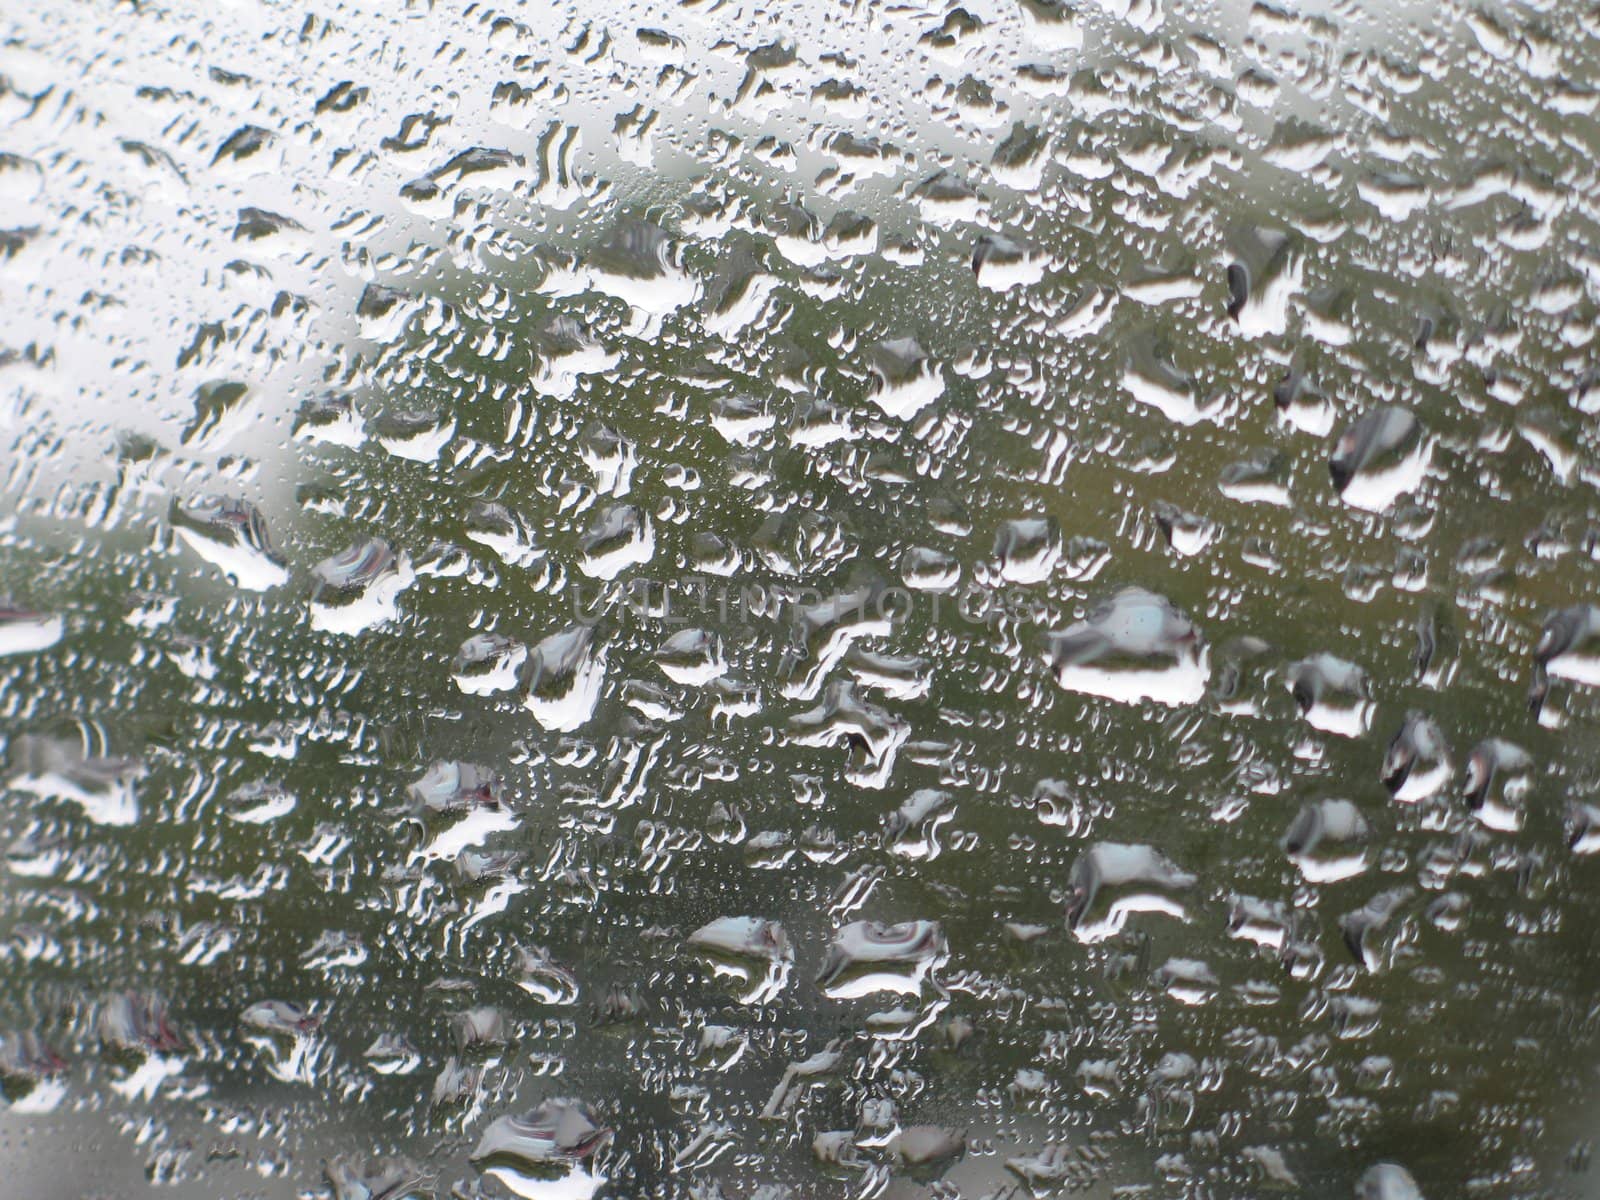 rain drops in a window